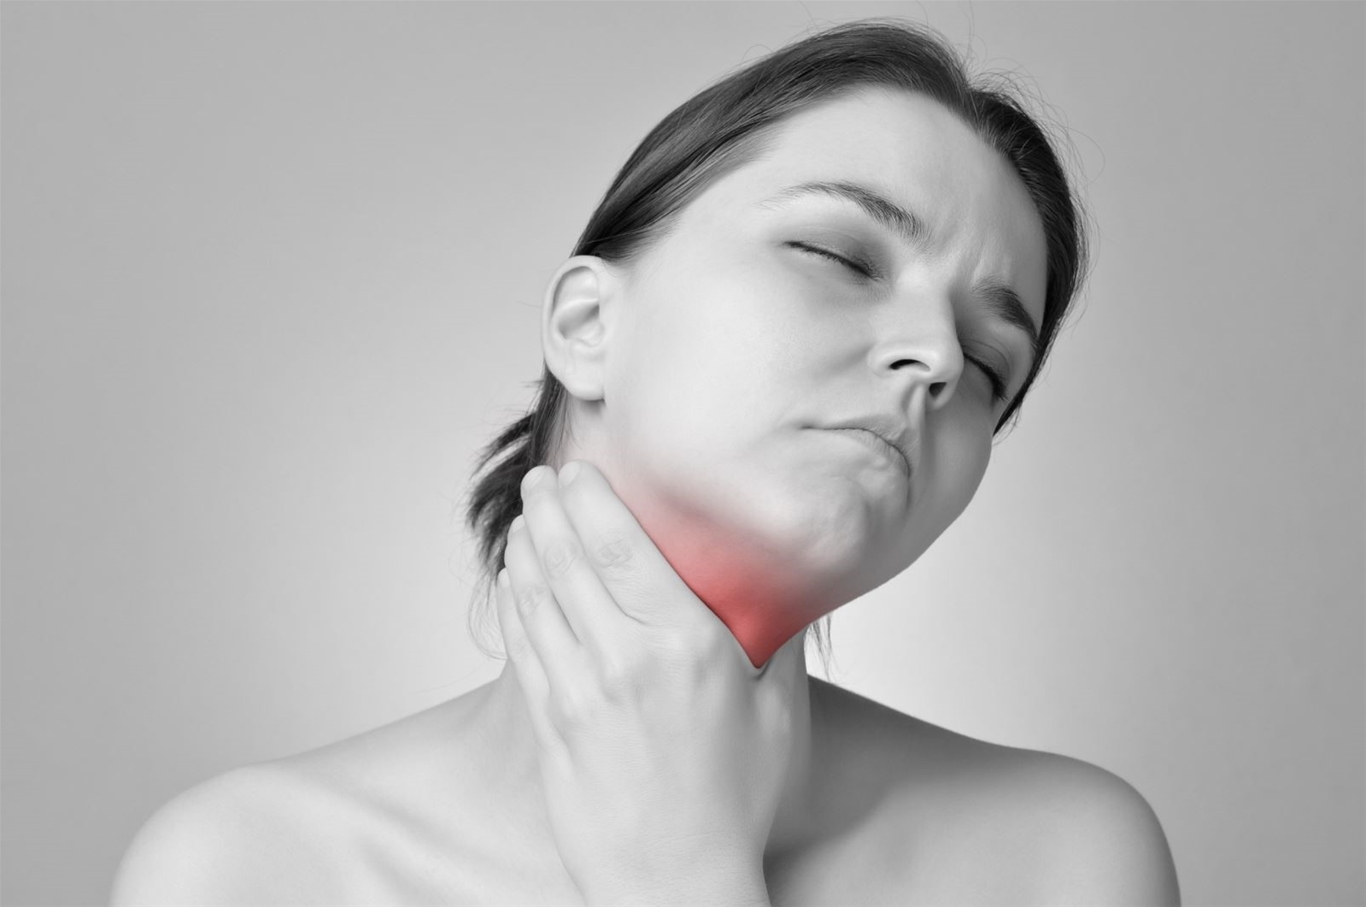 Viêm họng là bệnh lý gây khó chịu cho người bệnh, ảnh hưởng trực tiếp đến chất lượng cuộc sống